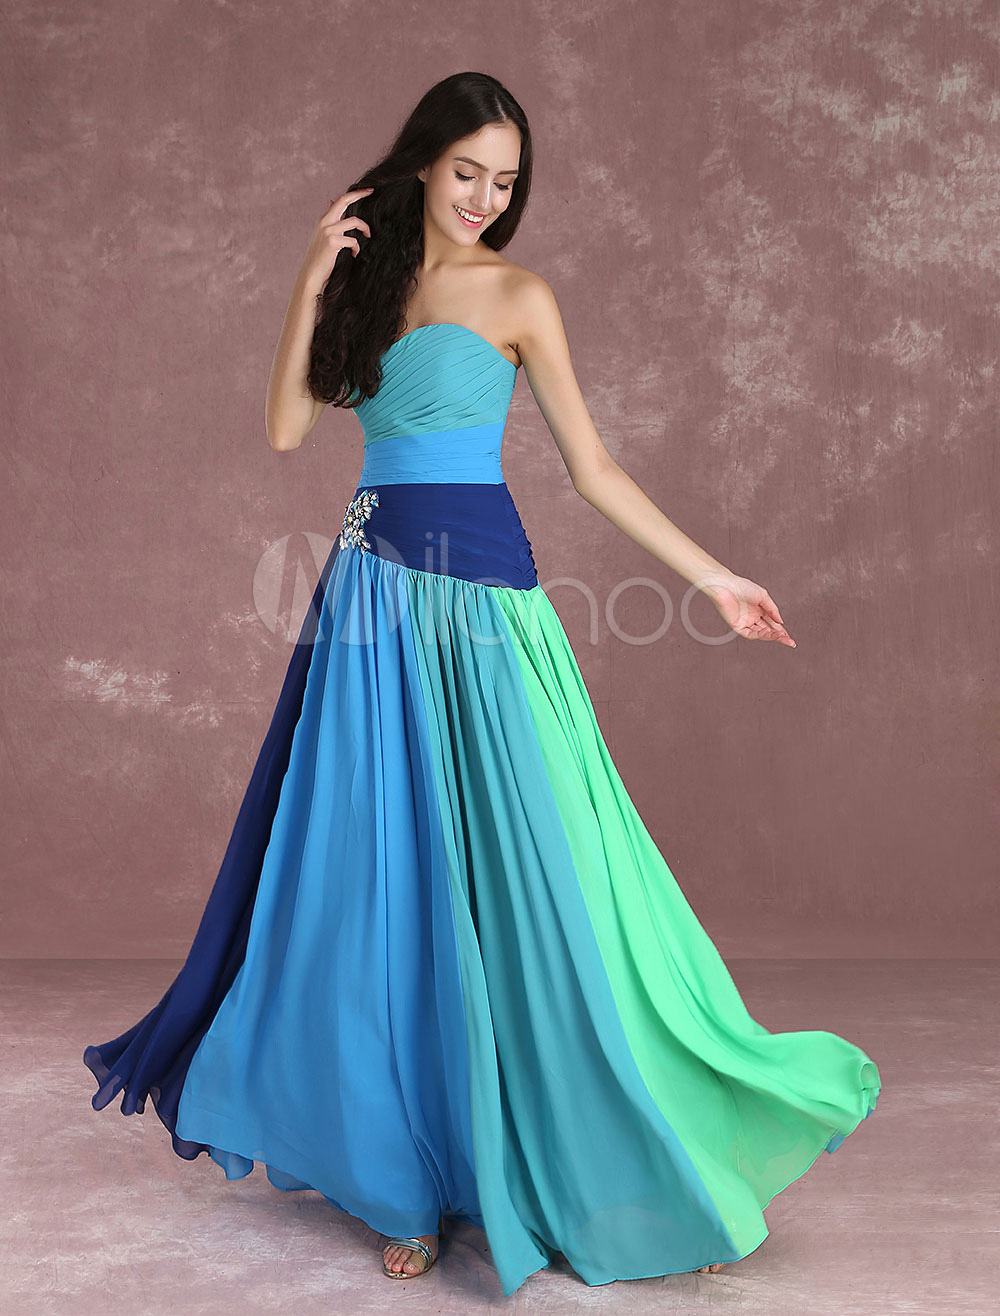 Blue Prom Dress 2021 Long Chiffon Sweatheart Occasion Dress Strapless ...